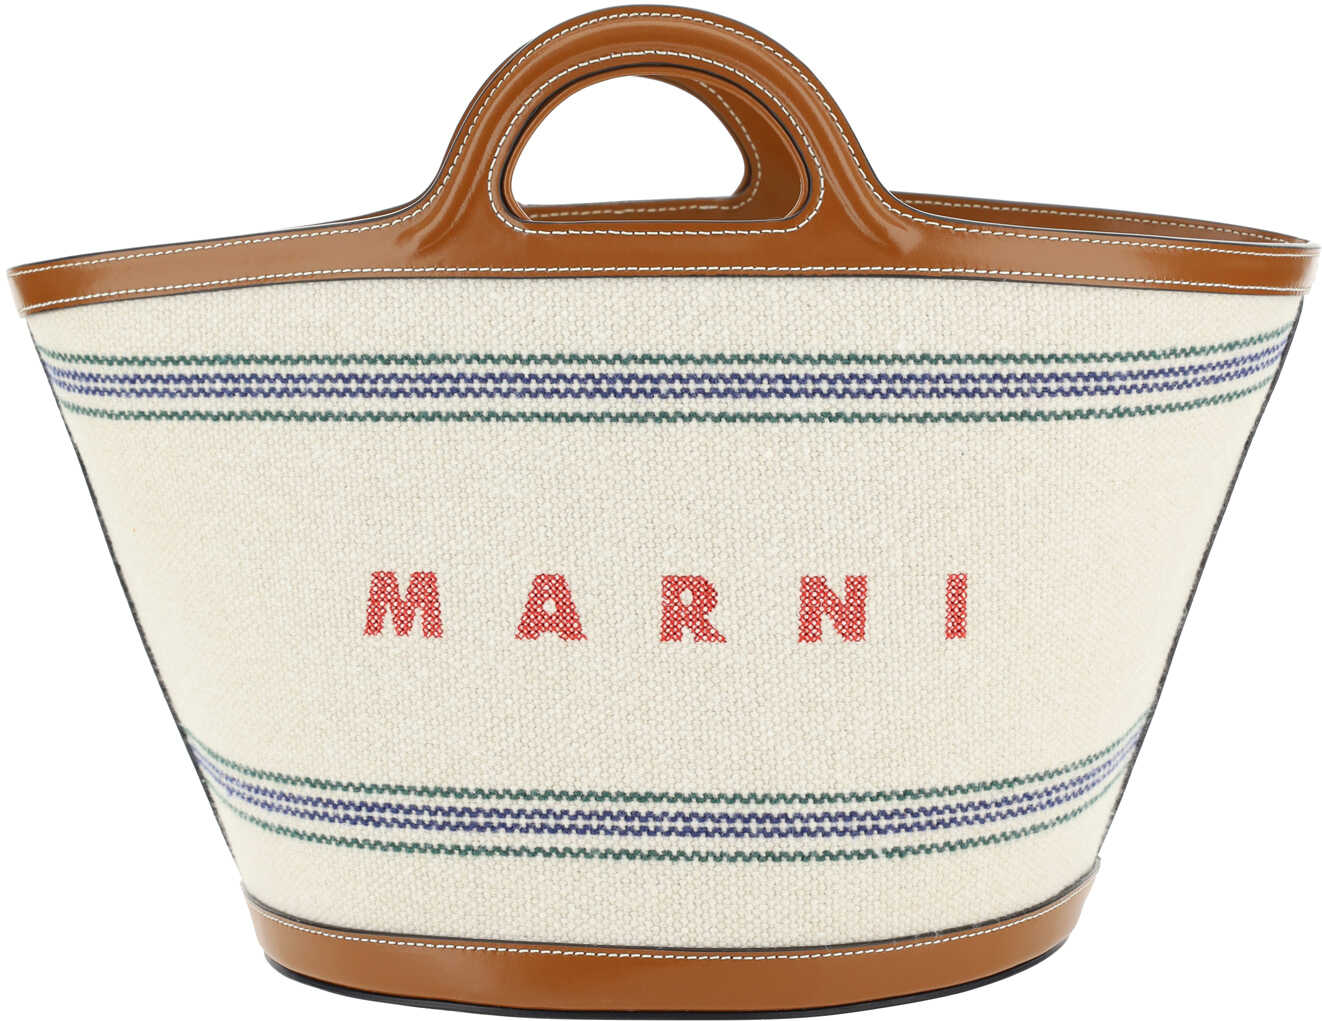 Marni Tropicalia Handbag NATURAL/MOKA